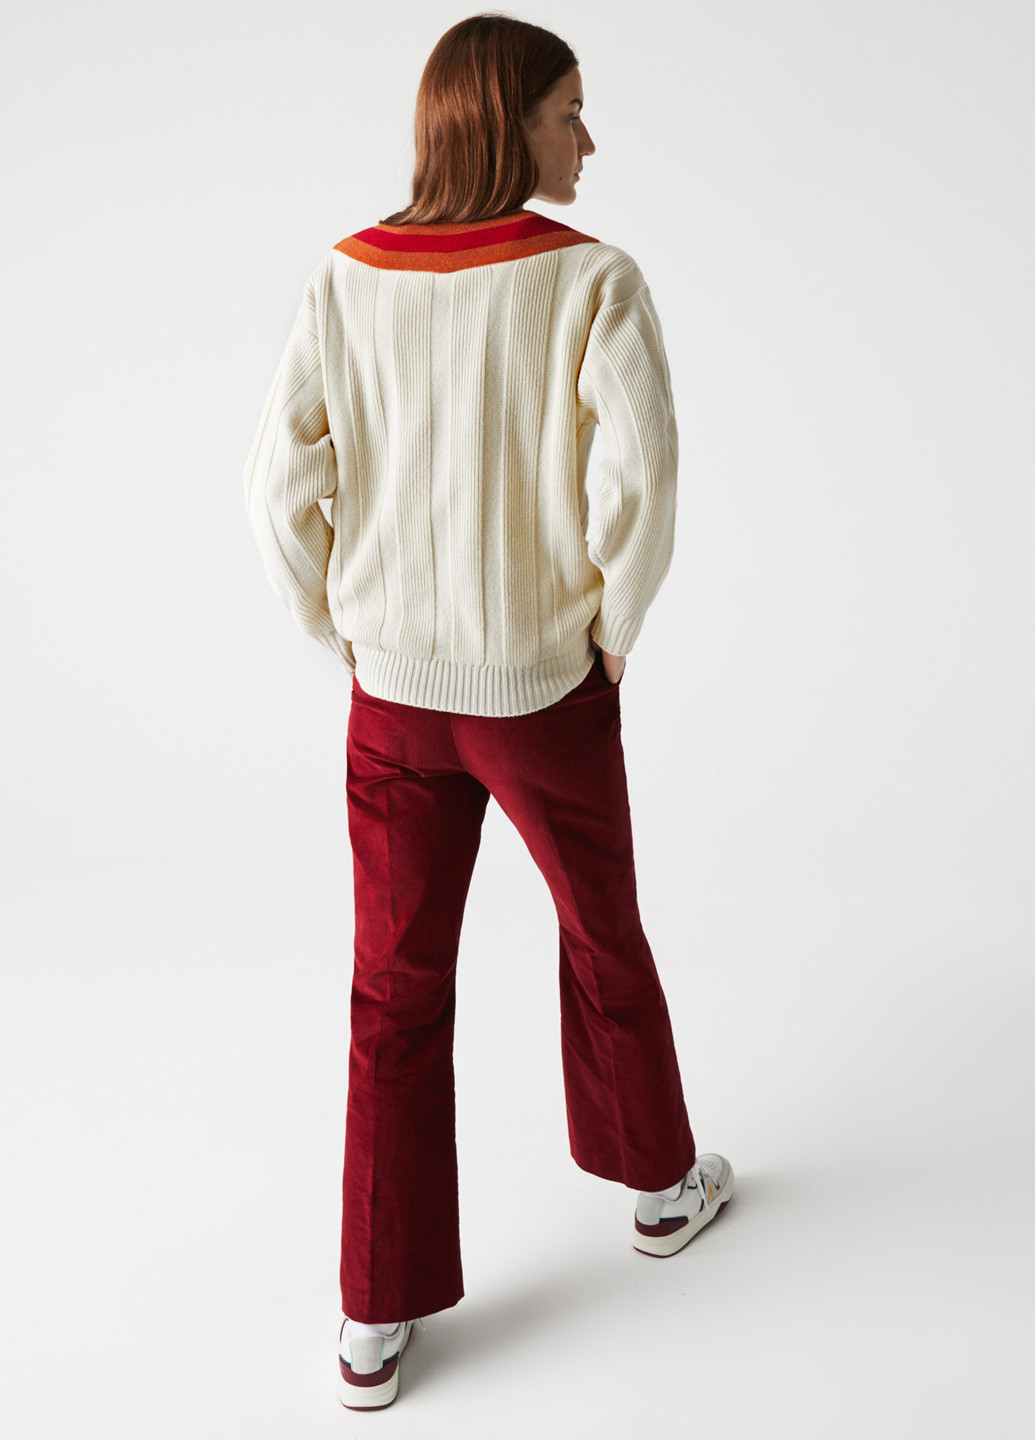 Світло-бежевий демісезонний пуловер пуловер Lacoste